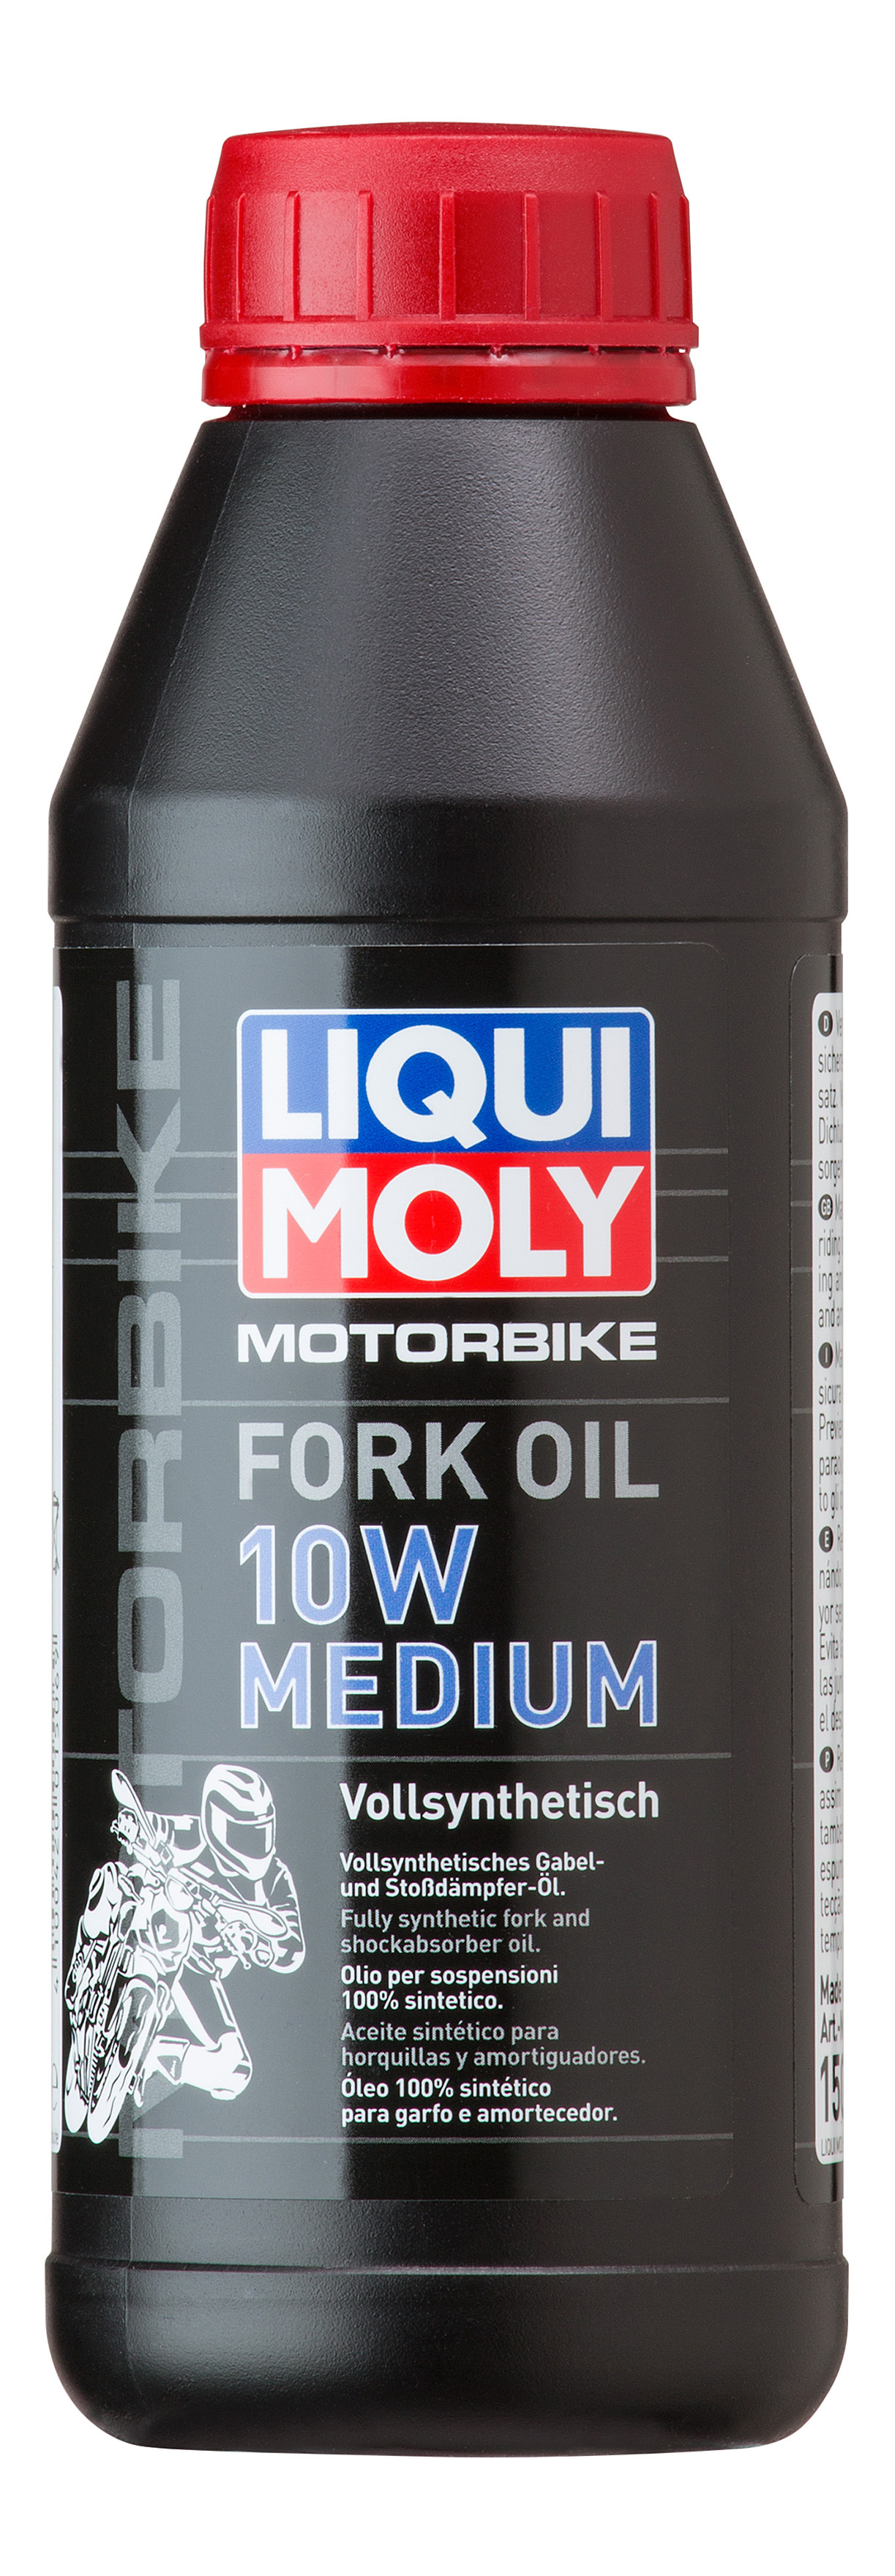 Синтетическое масло для вилок и амортизаторов Motorbike Fork Oil Medium 10W